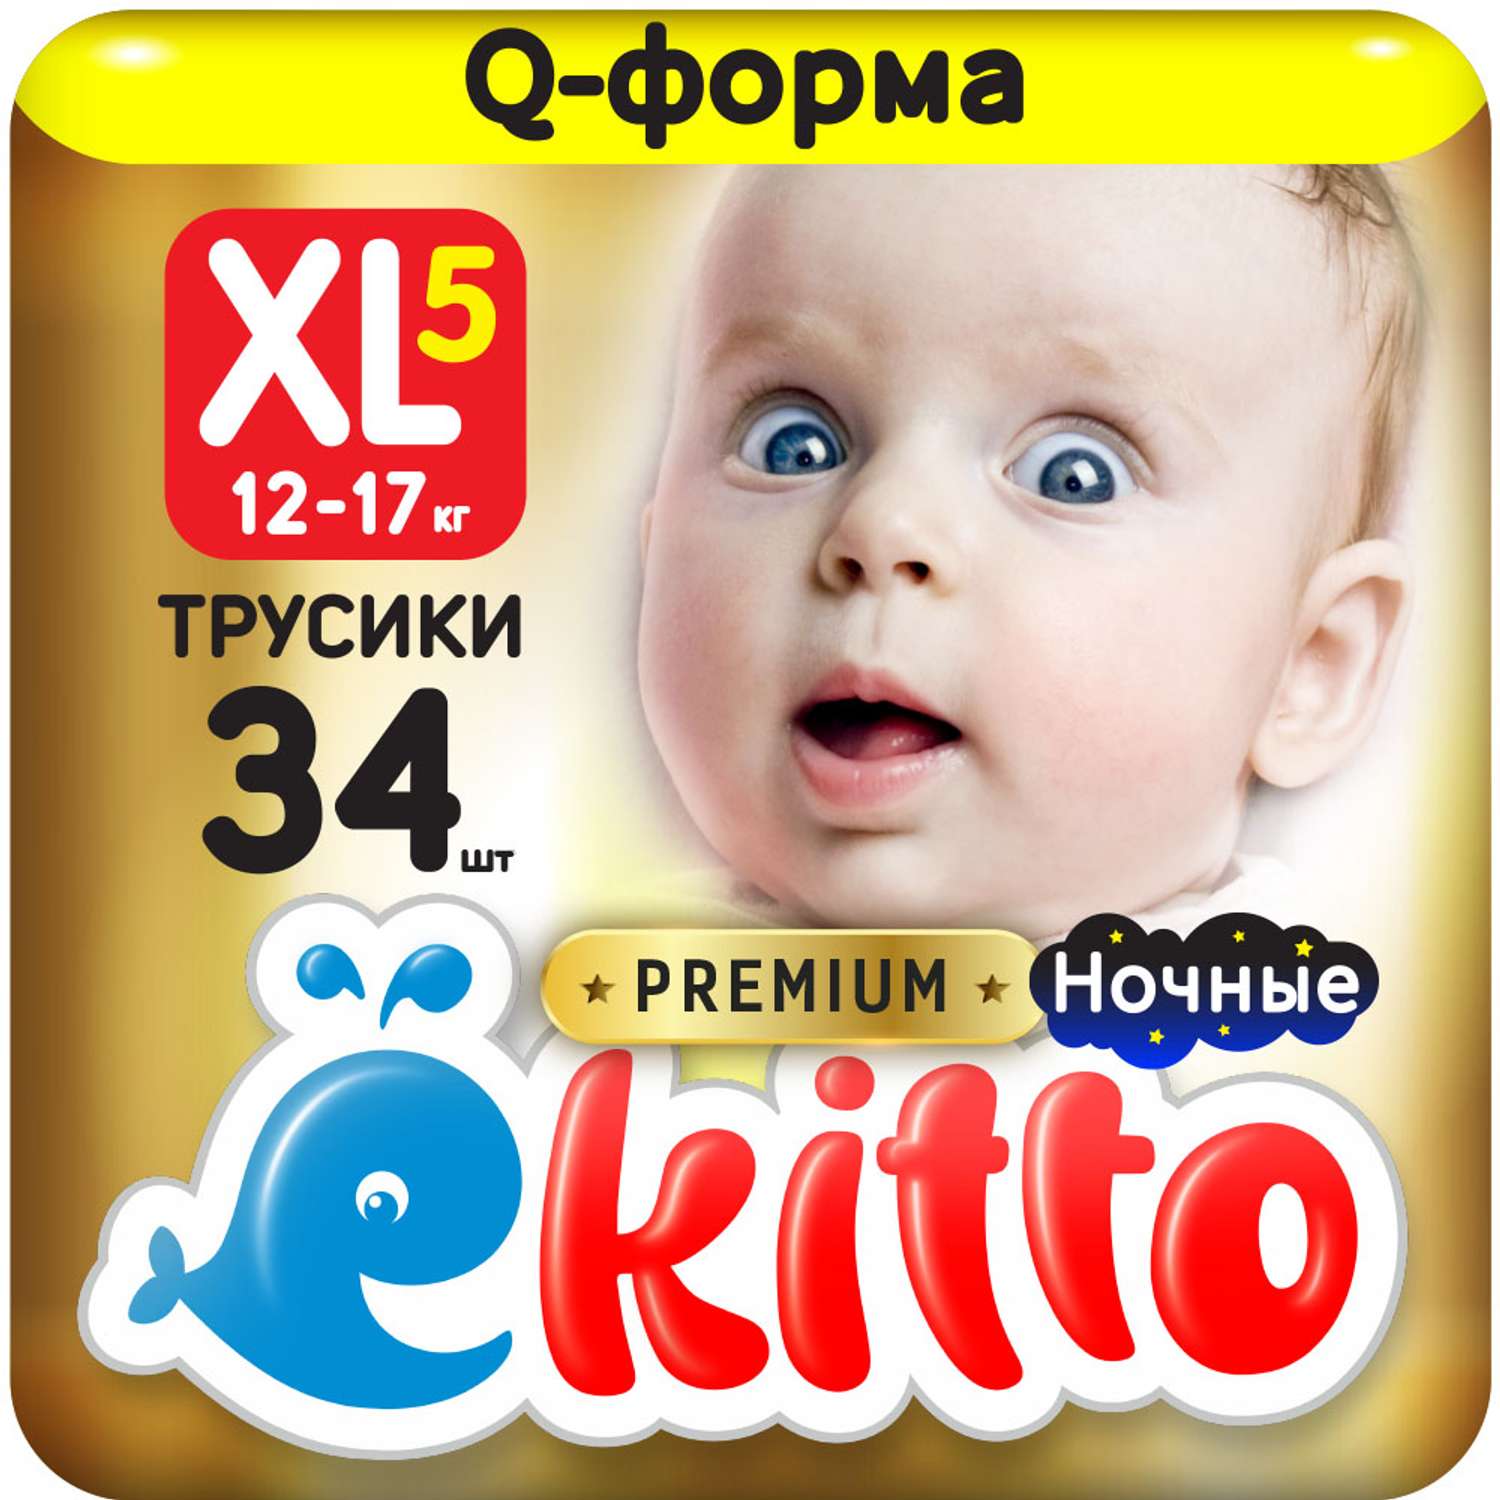 Подгузники-трусики Ekitto 5 размер XL для новорожденных детей от 12-17 кг 34 шт - фото 1